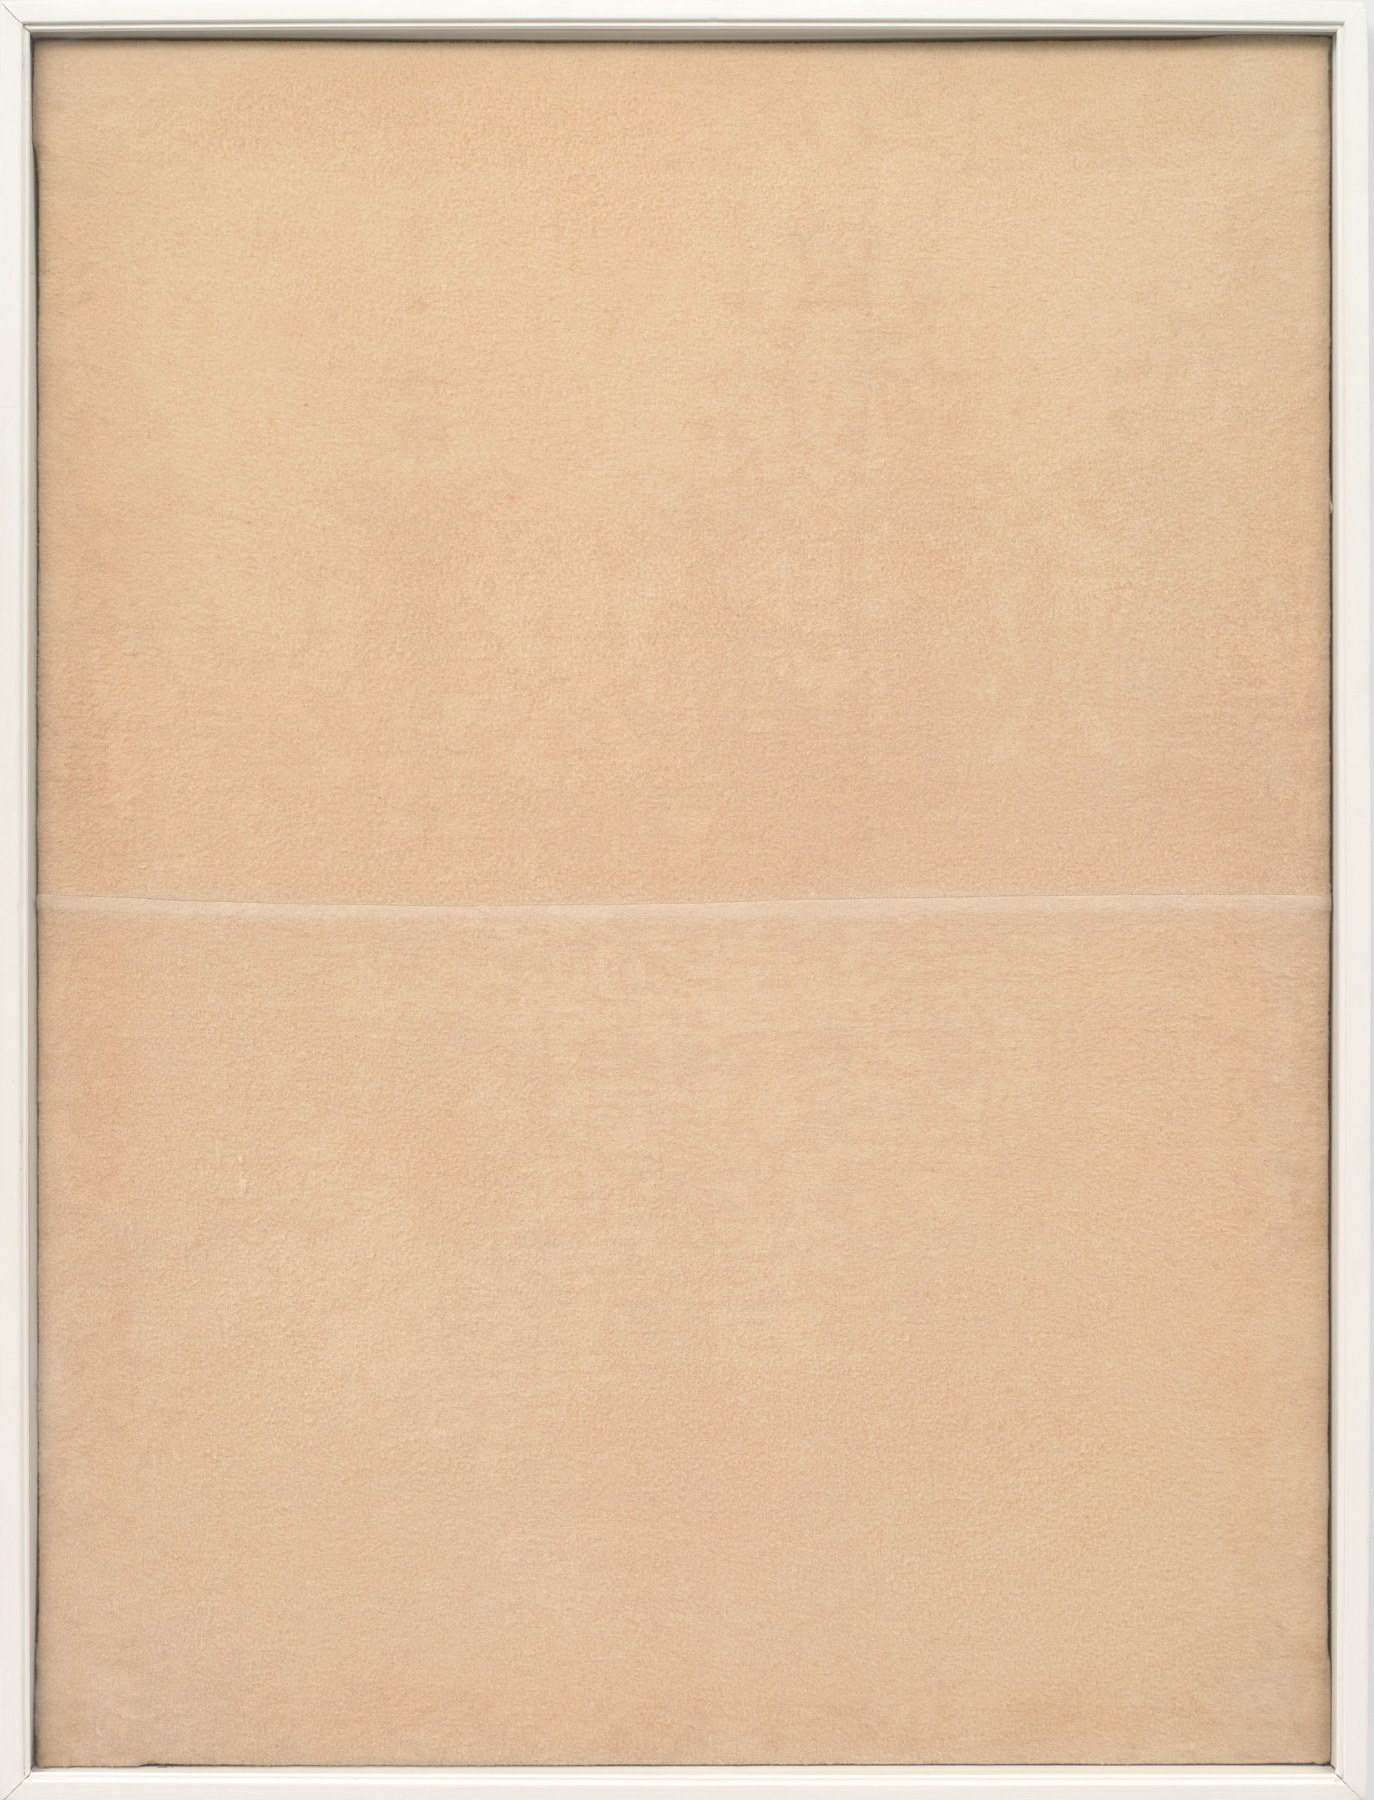 Piero Manzoni

&amp;ldquo;Achrome&amp;rdquo;, 1960

Sewn cloth

39 1/4 x 29 1/4 inches

99.5 x 74.5 cm

MAN 47

$3,250,000